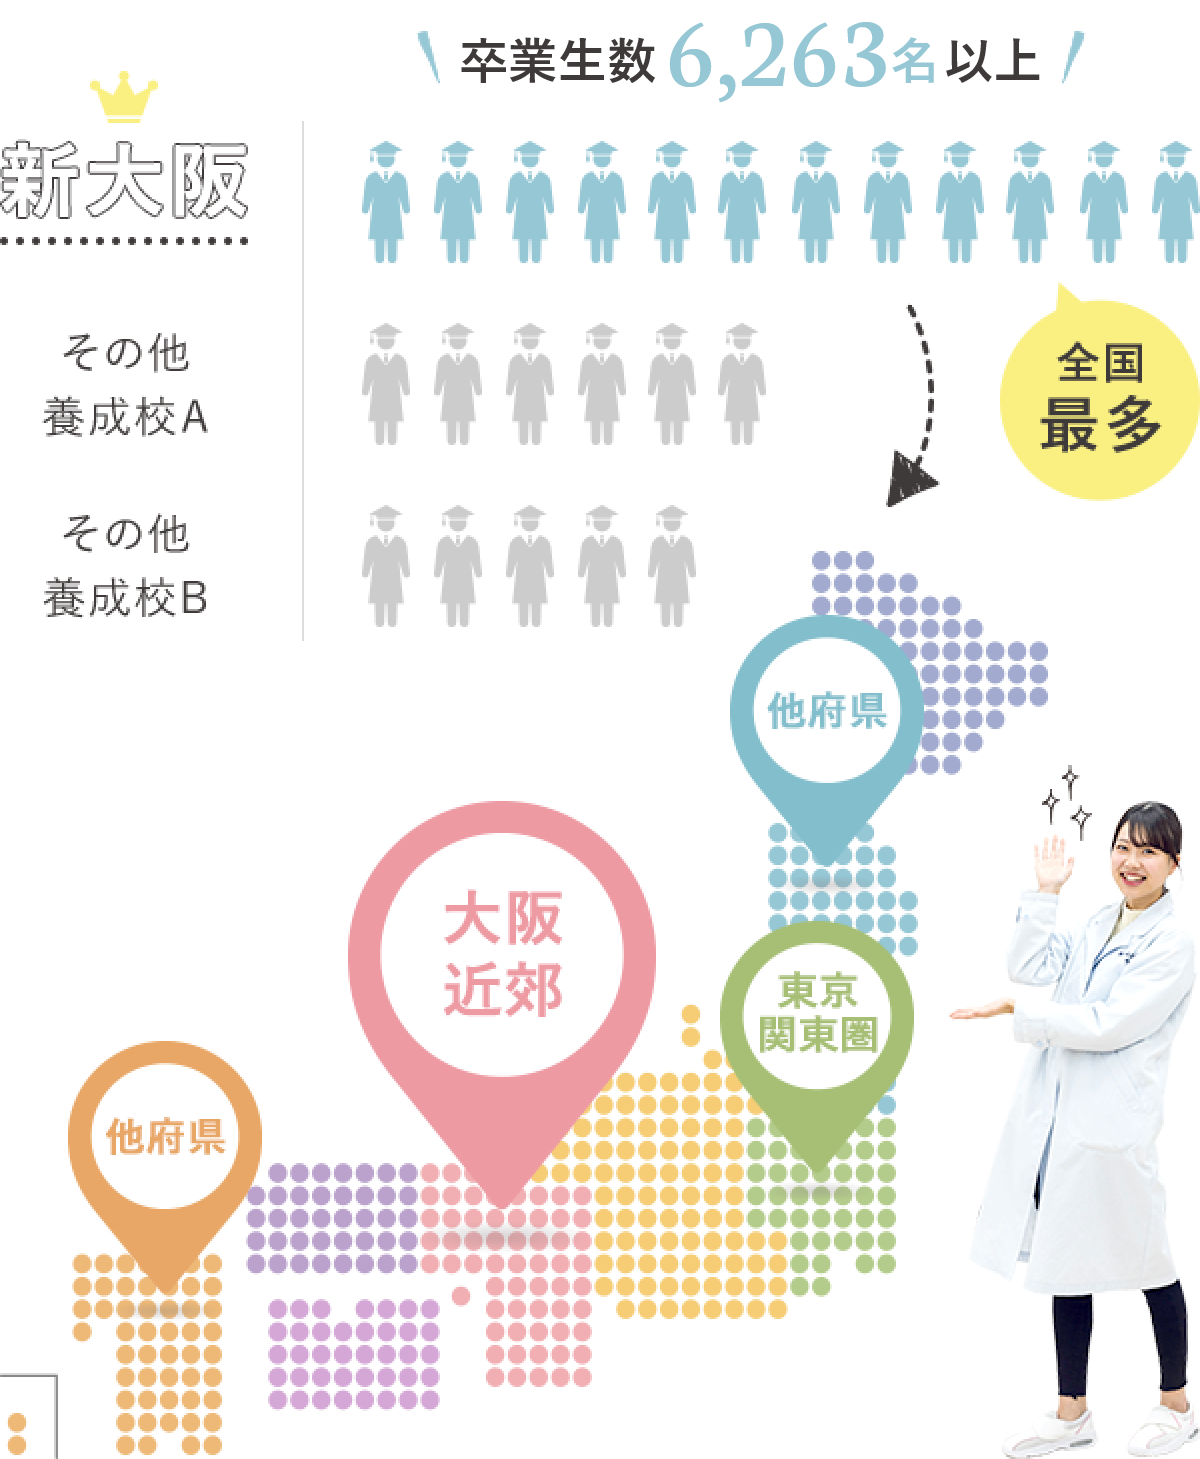 新大阪 卒業生数6,194名以上 全国最多